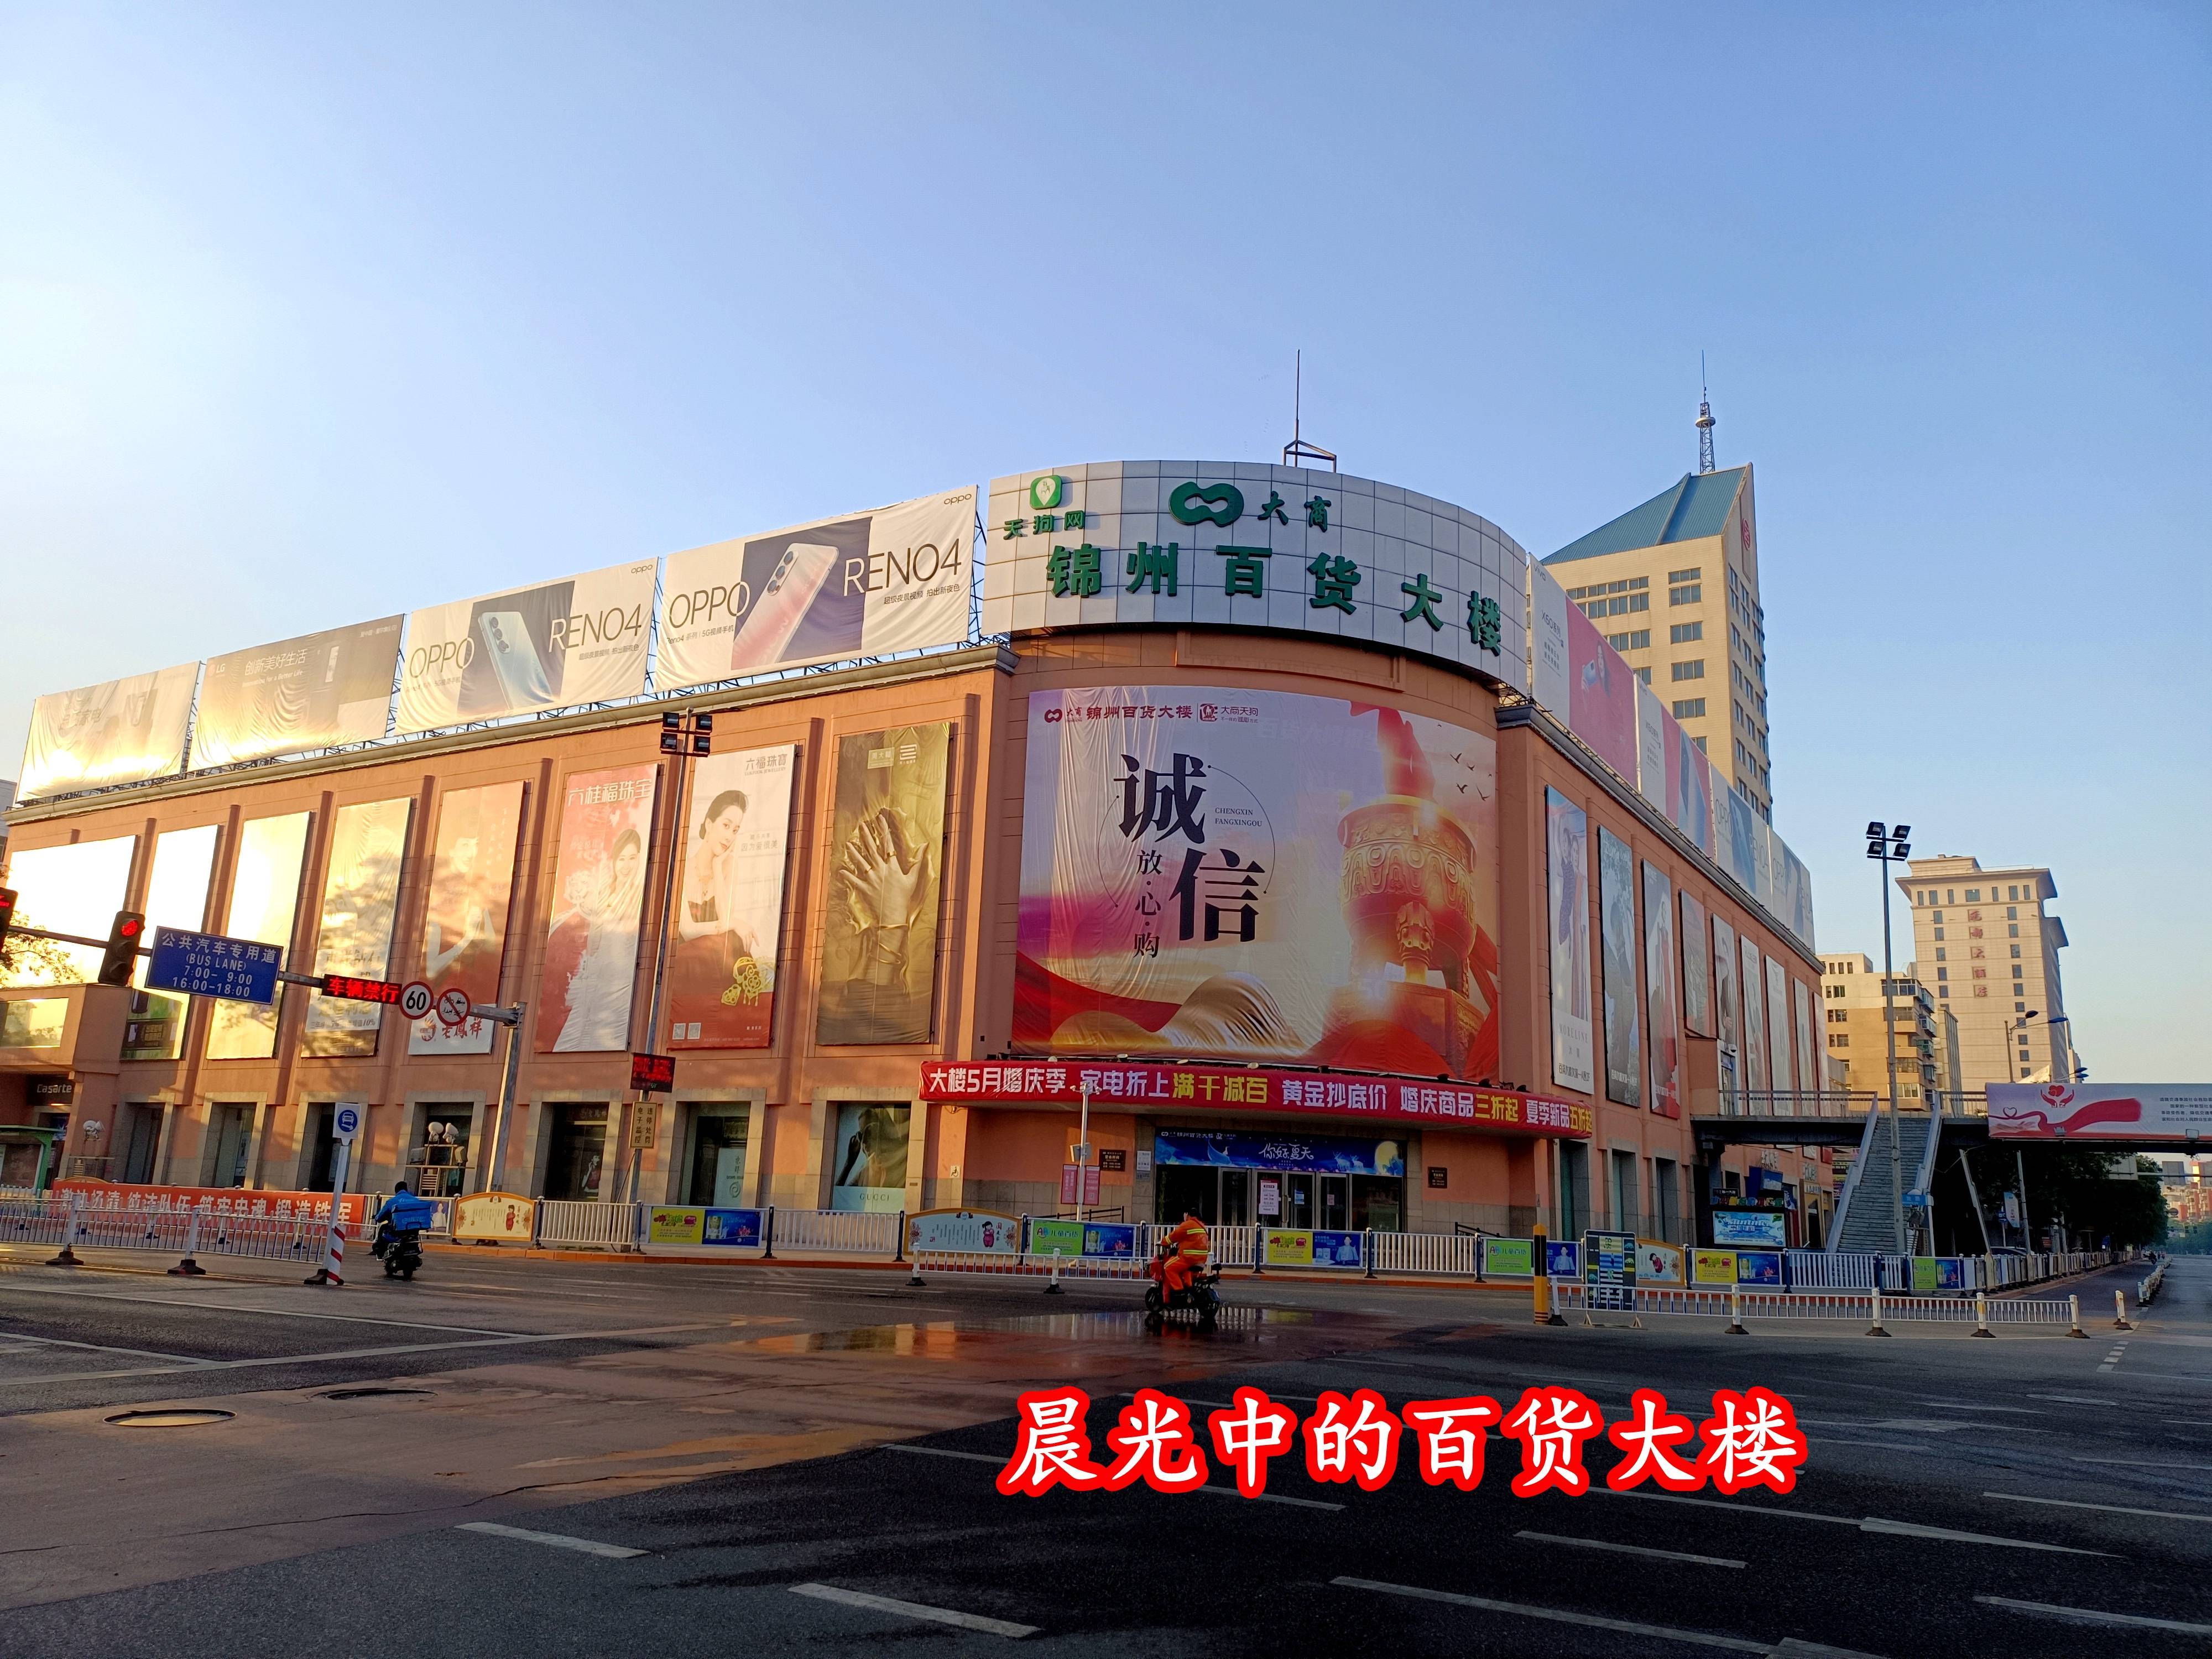 锦州百货大楼迎来其70周年庆,目前仍为辽西最大的百货大楼,但风光不再